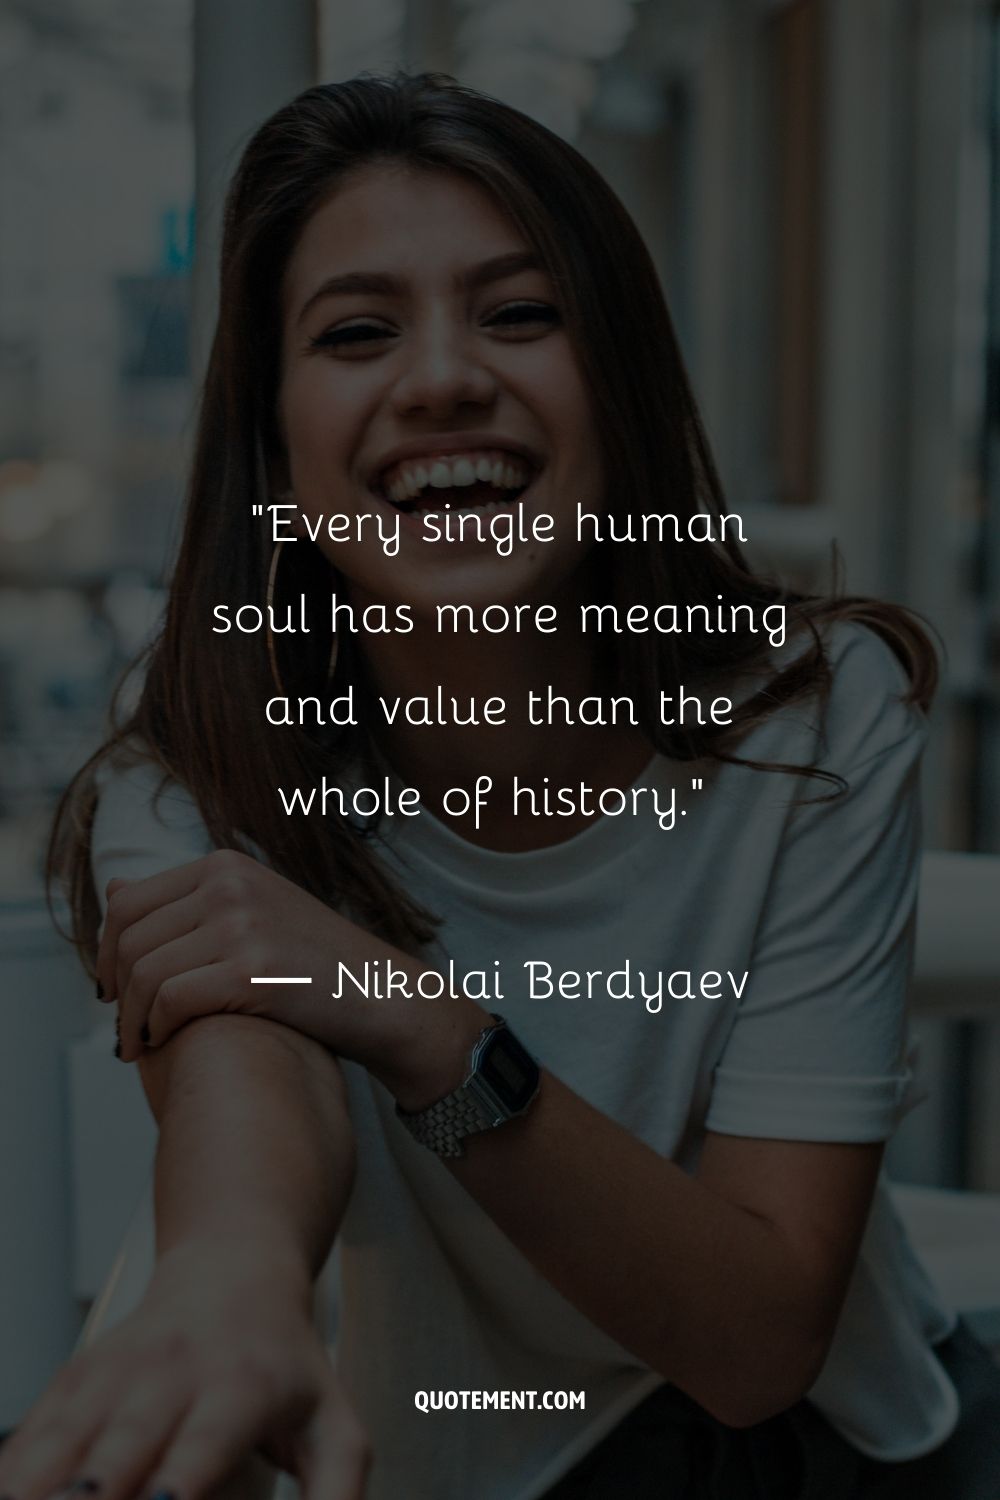 Cada alma humana tiene más significado y valor que toda la historia.